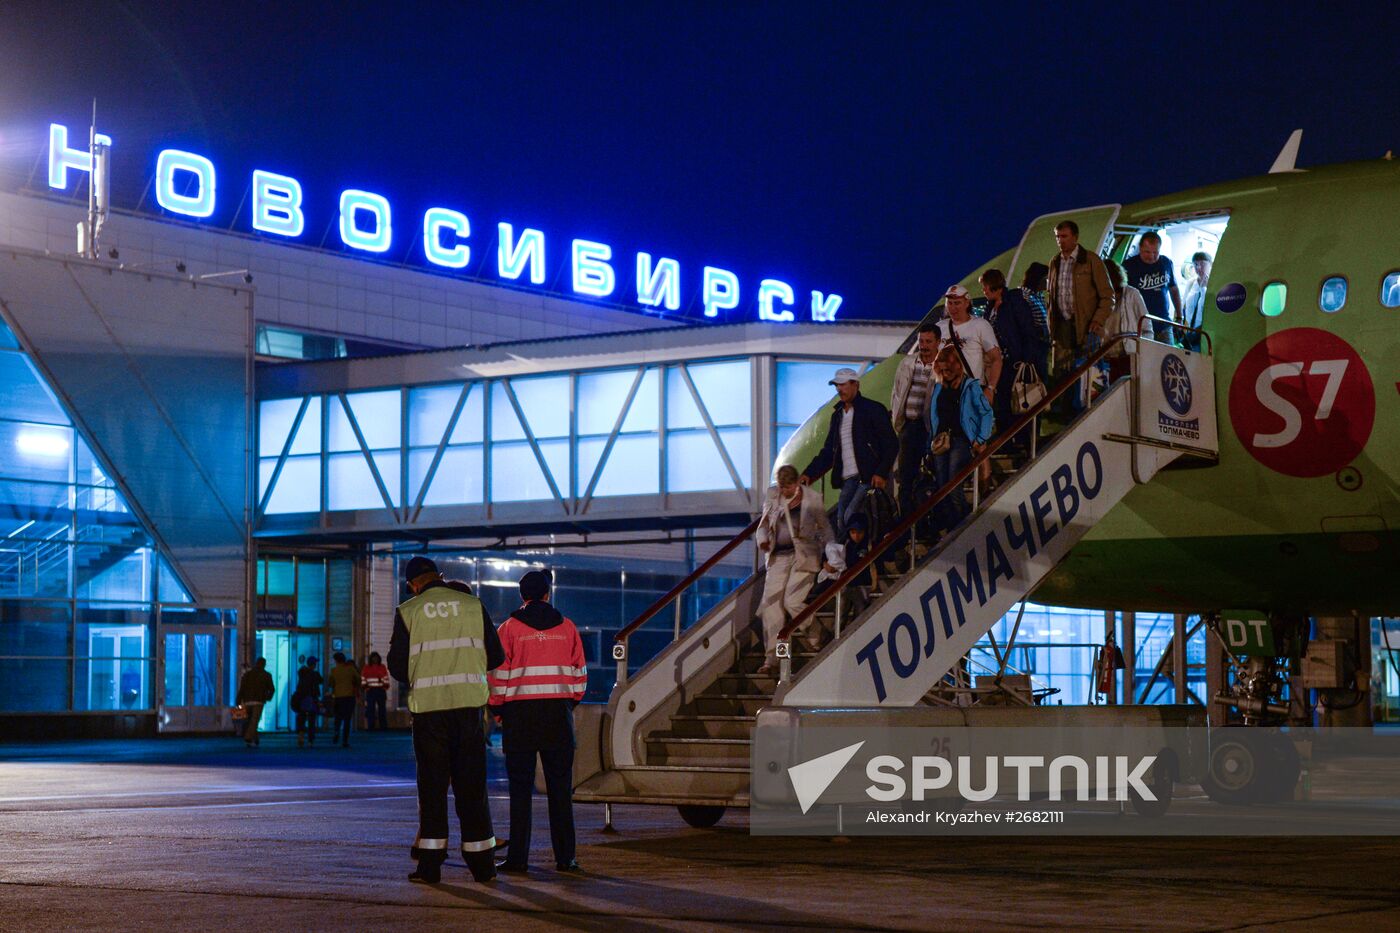 Tolmachovo International Airport in Novosibirsk